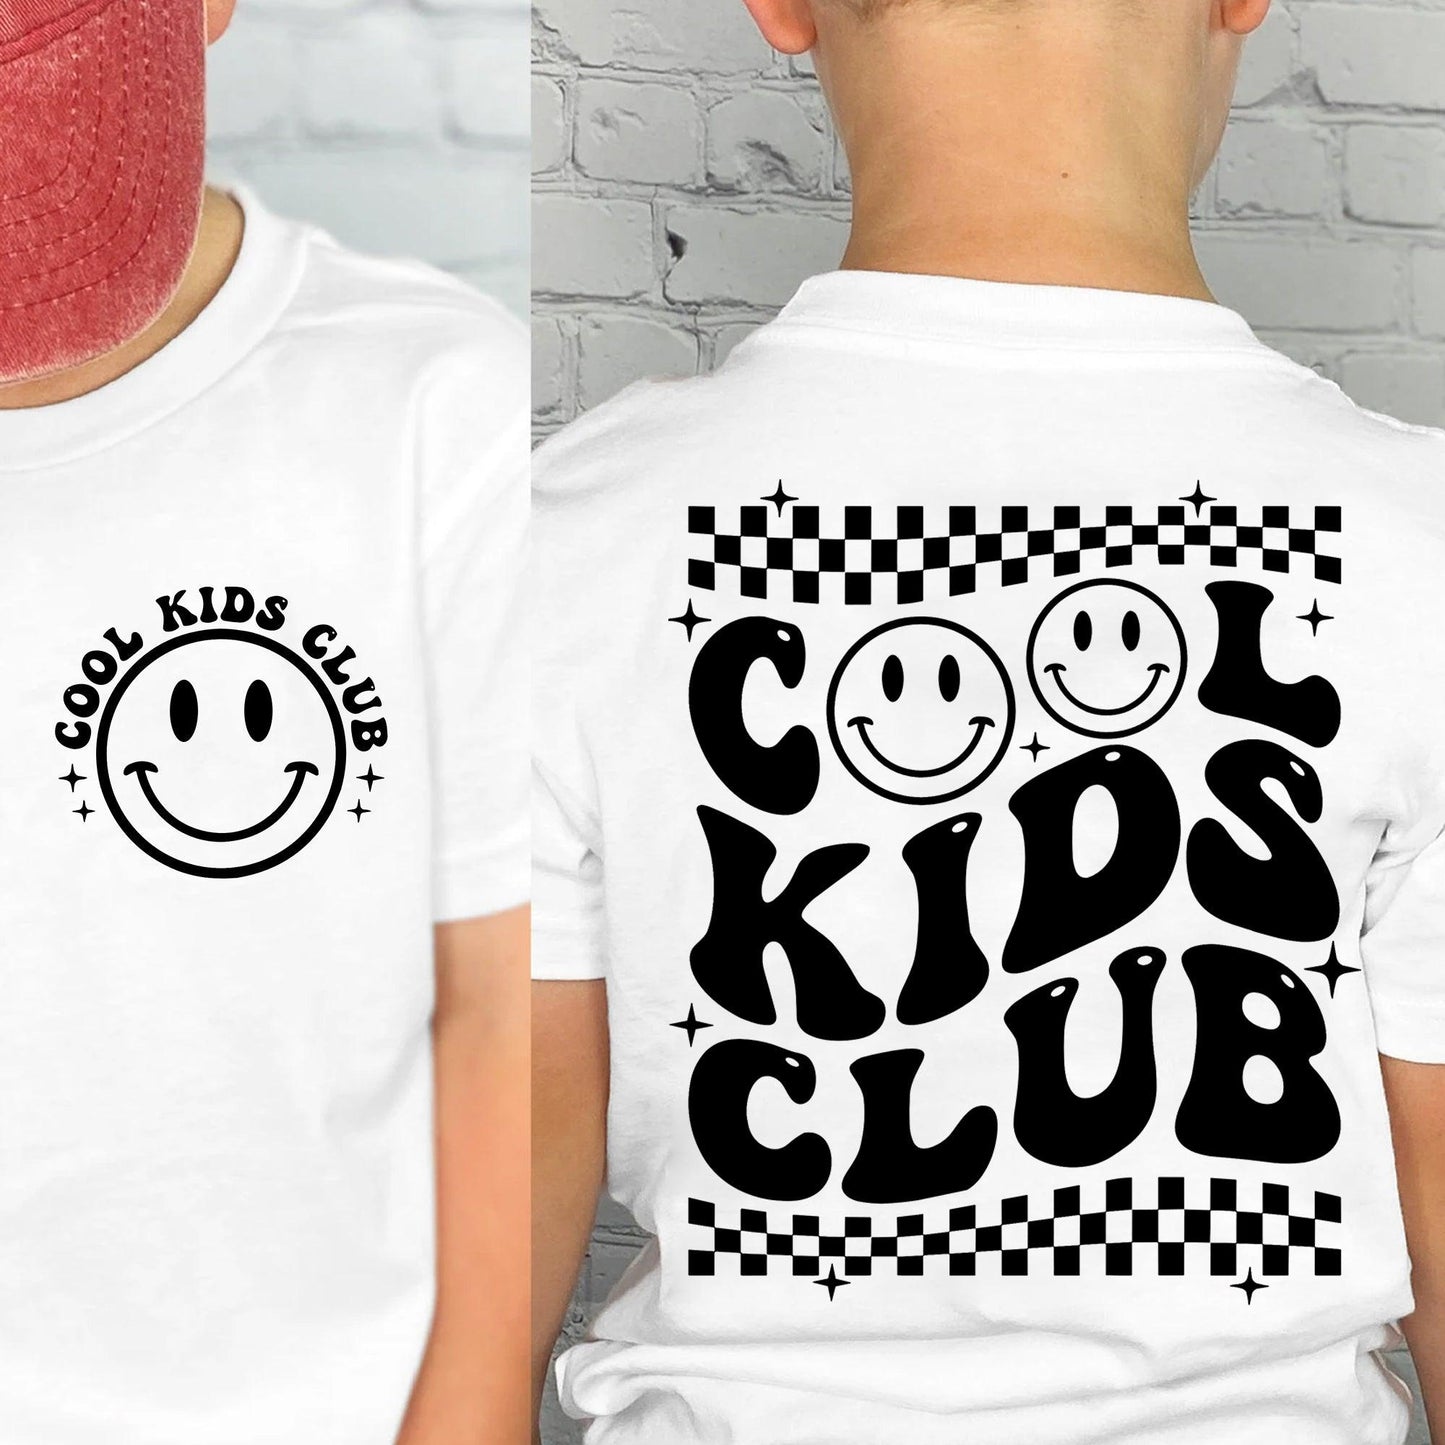 Cooles Kids Club T-Shirt, Geschenk für Kinder - GiftHaus